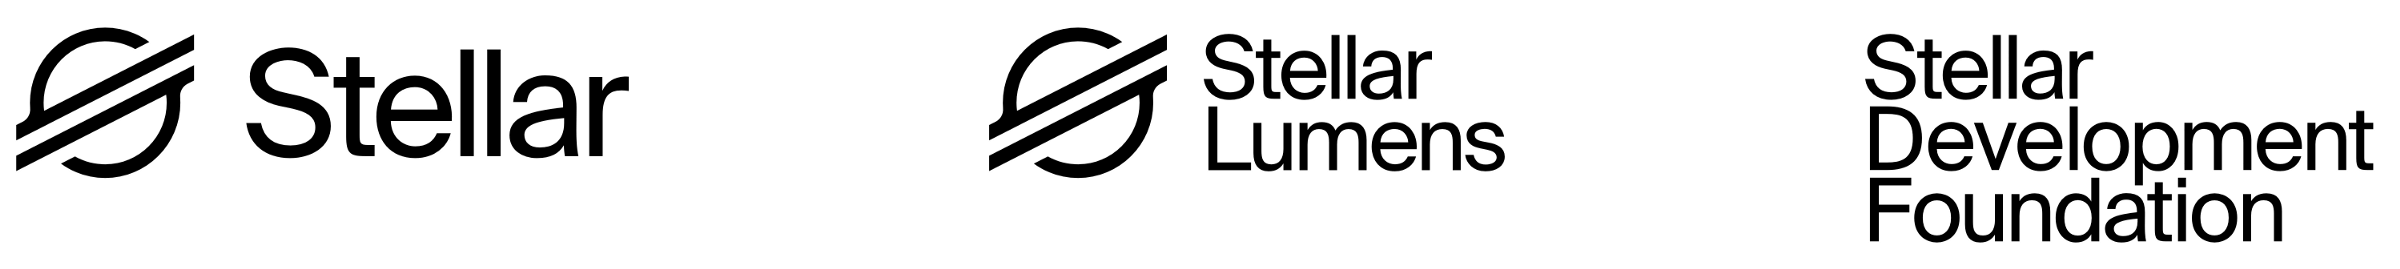 Stellar-logo